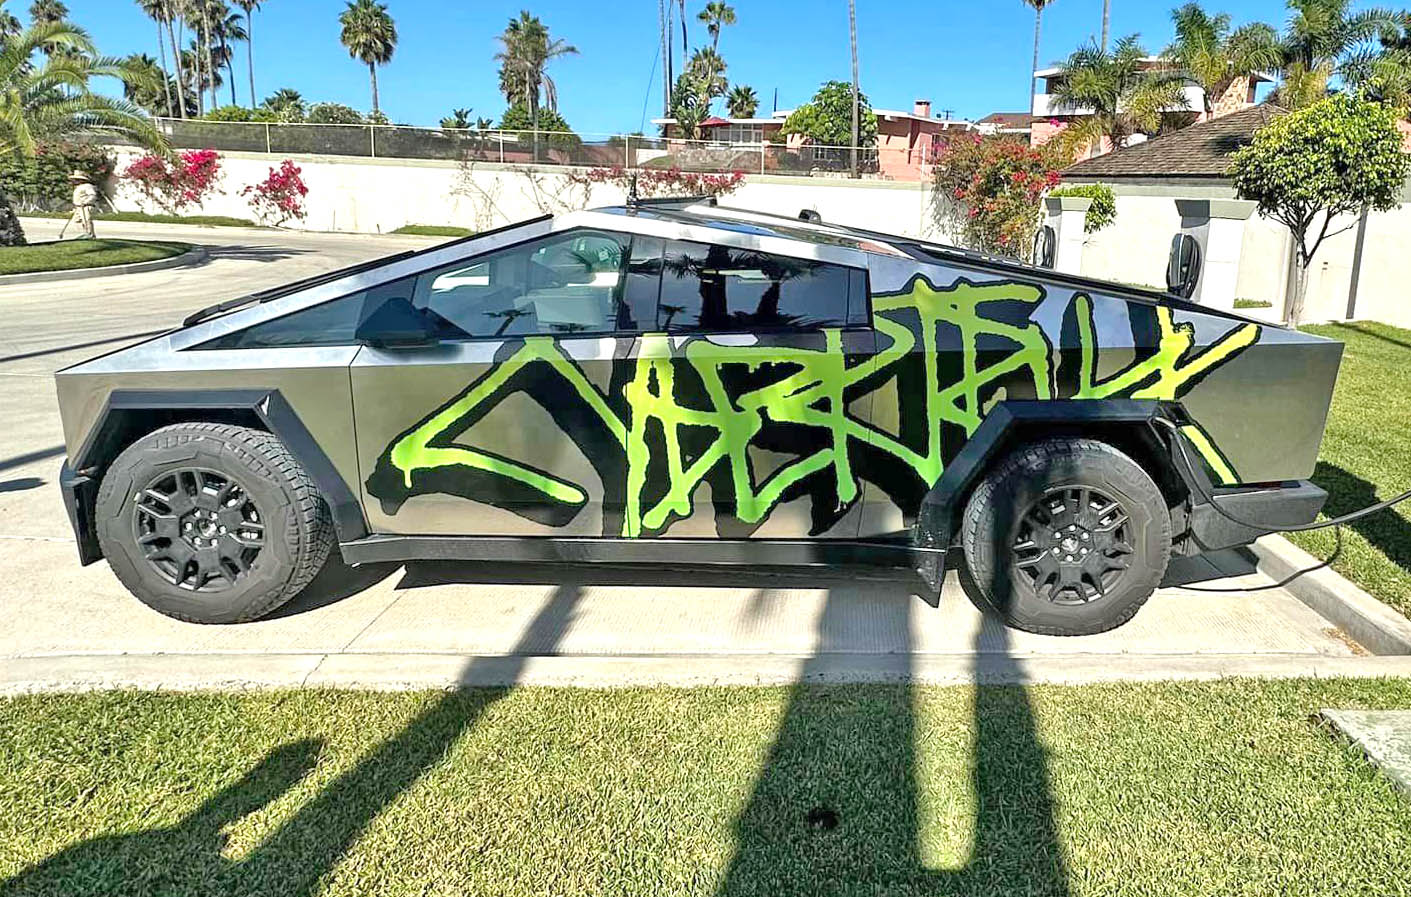 Tesla Cybertruck Graffiti Wrap Cybertrucks First Look (Spotted in Mexico)! graffiti cybertruck wrap 1